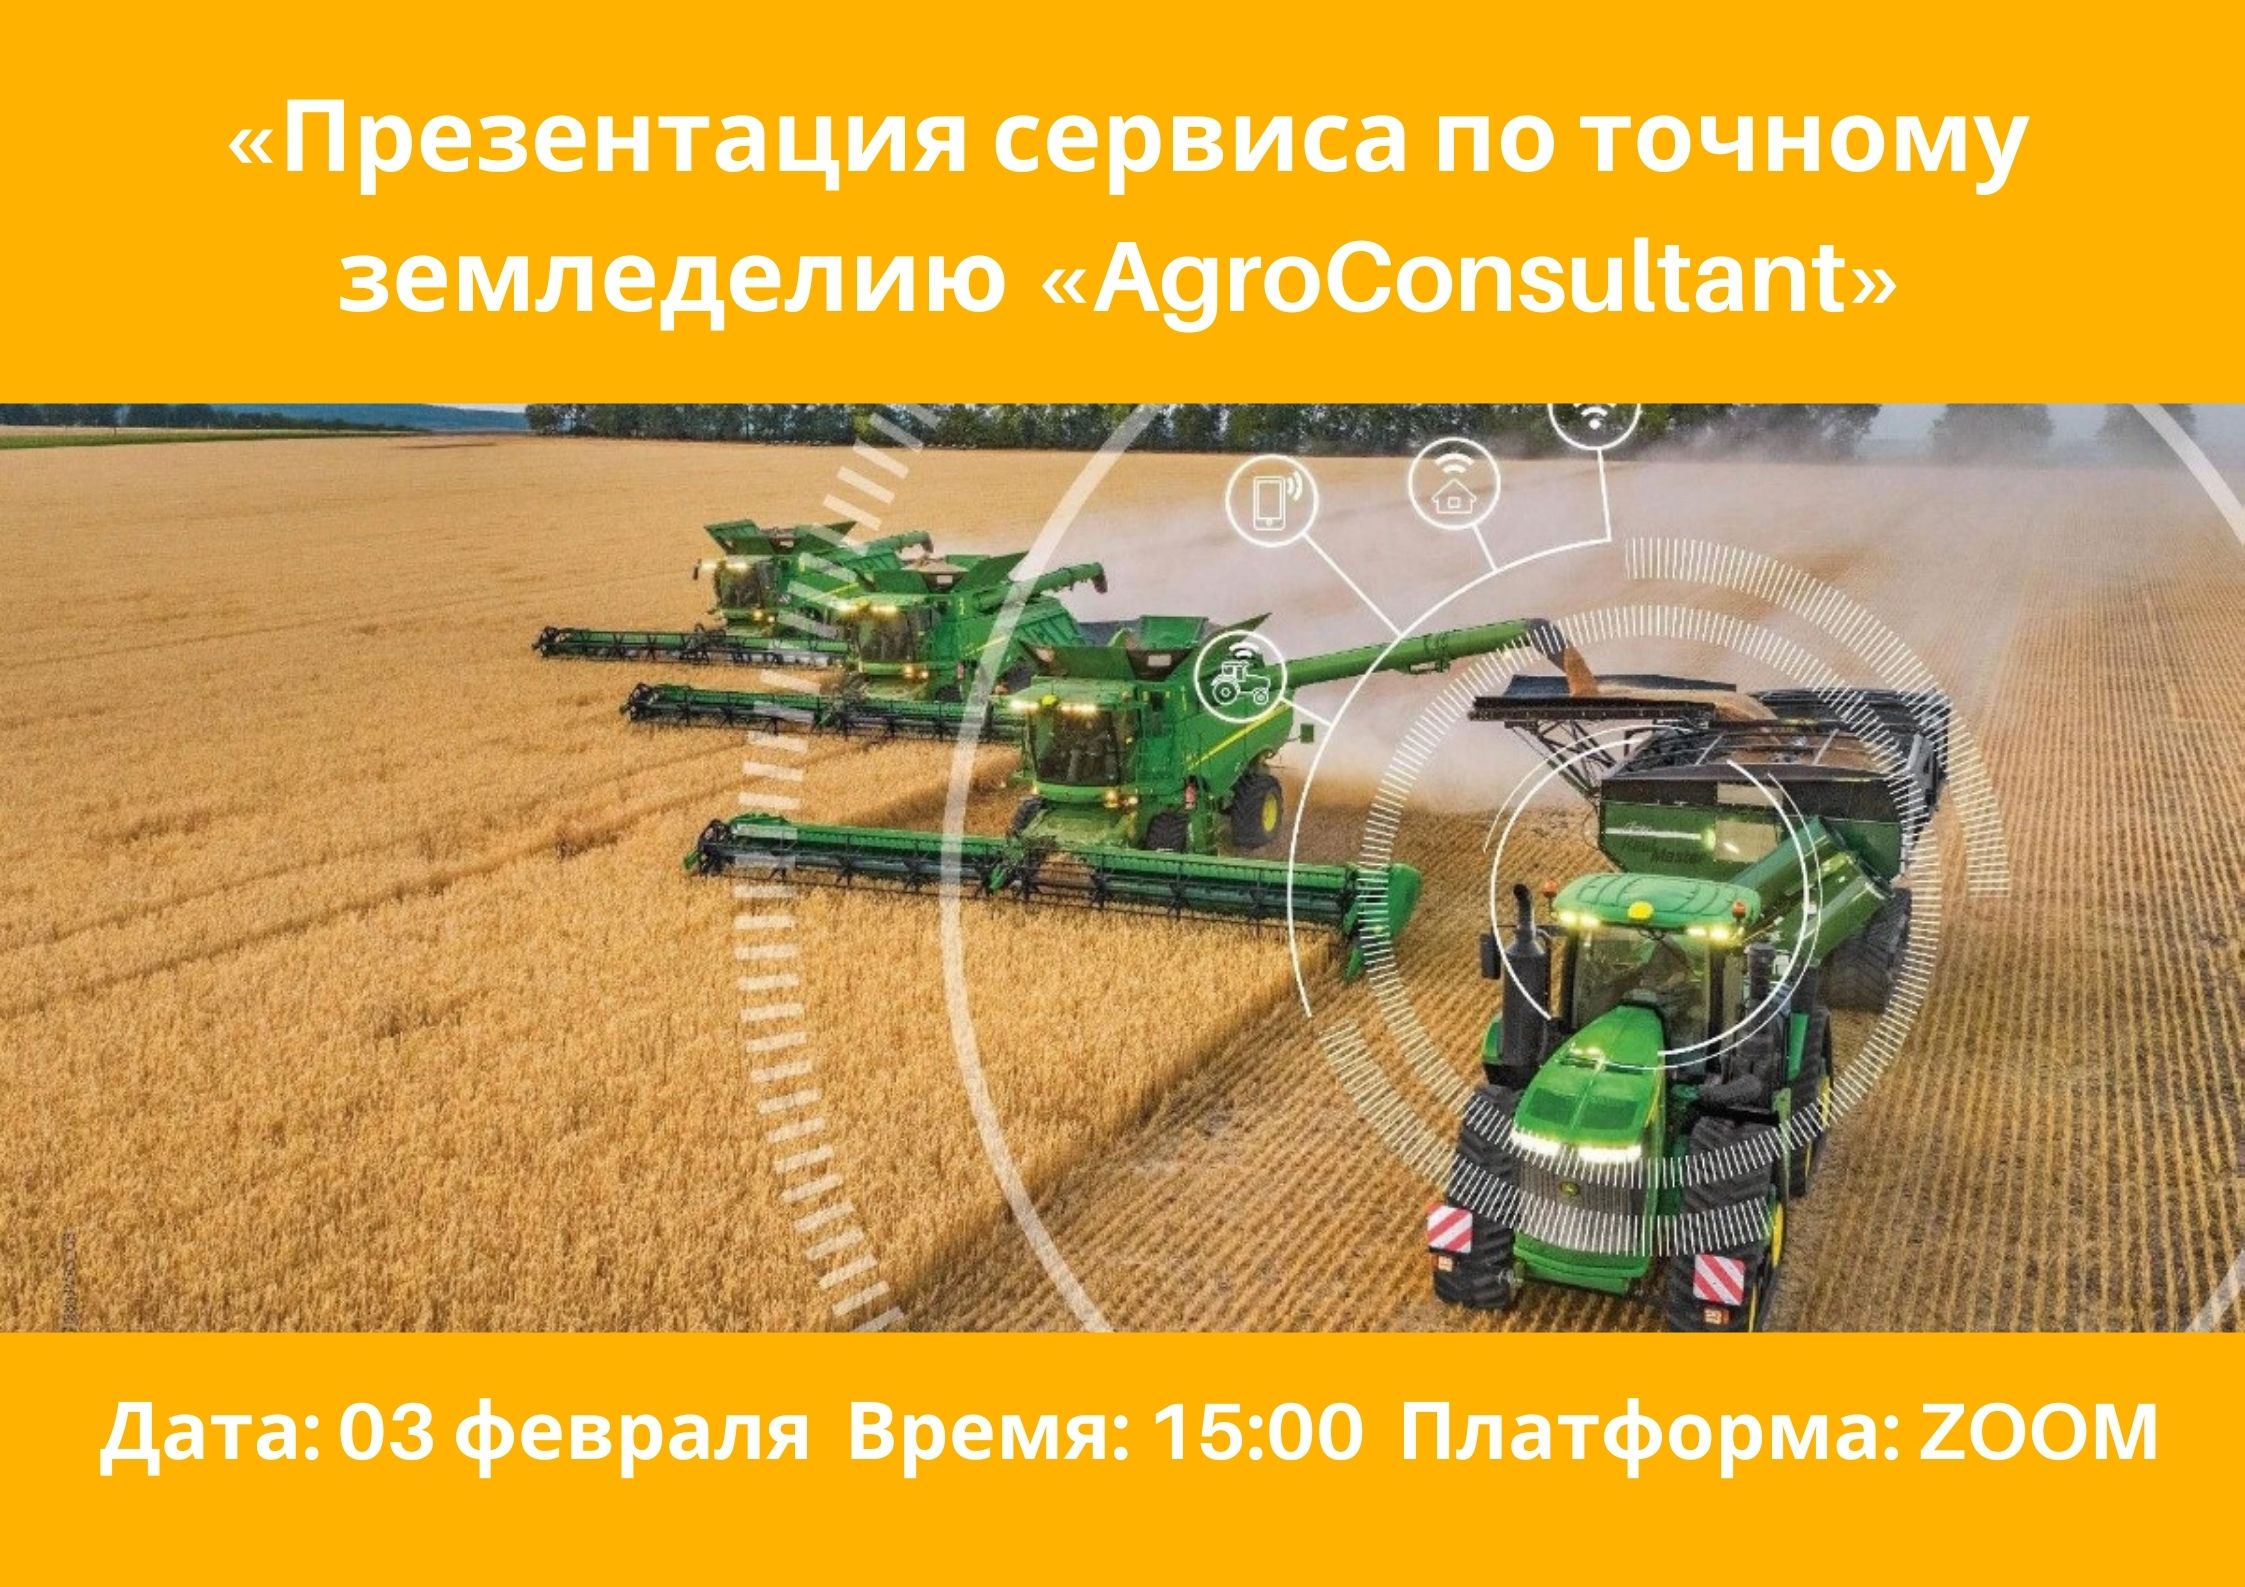 «Презентация сервиса по точному земледелию «AgroConsultant»,